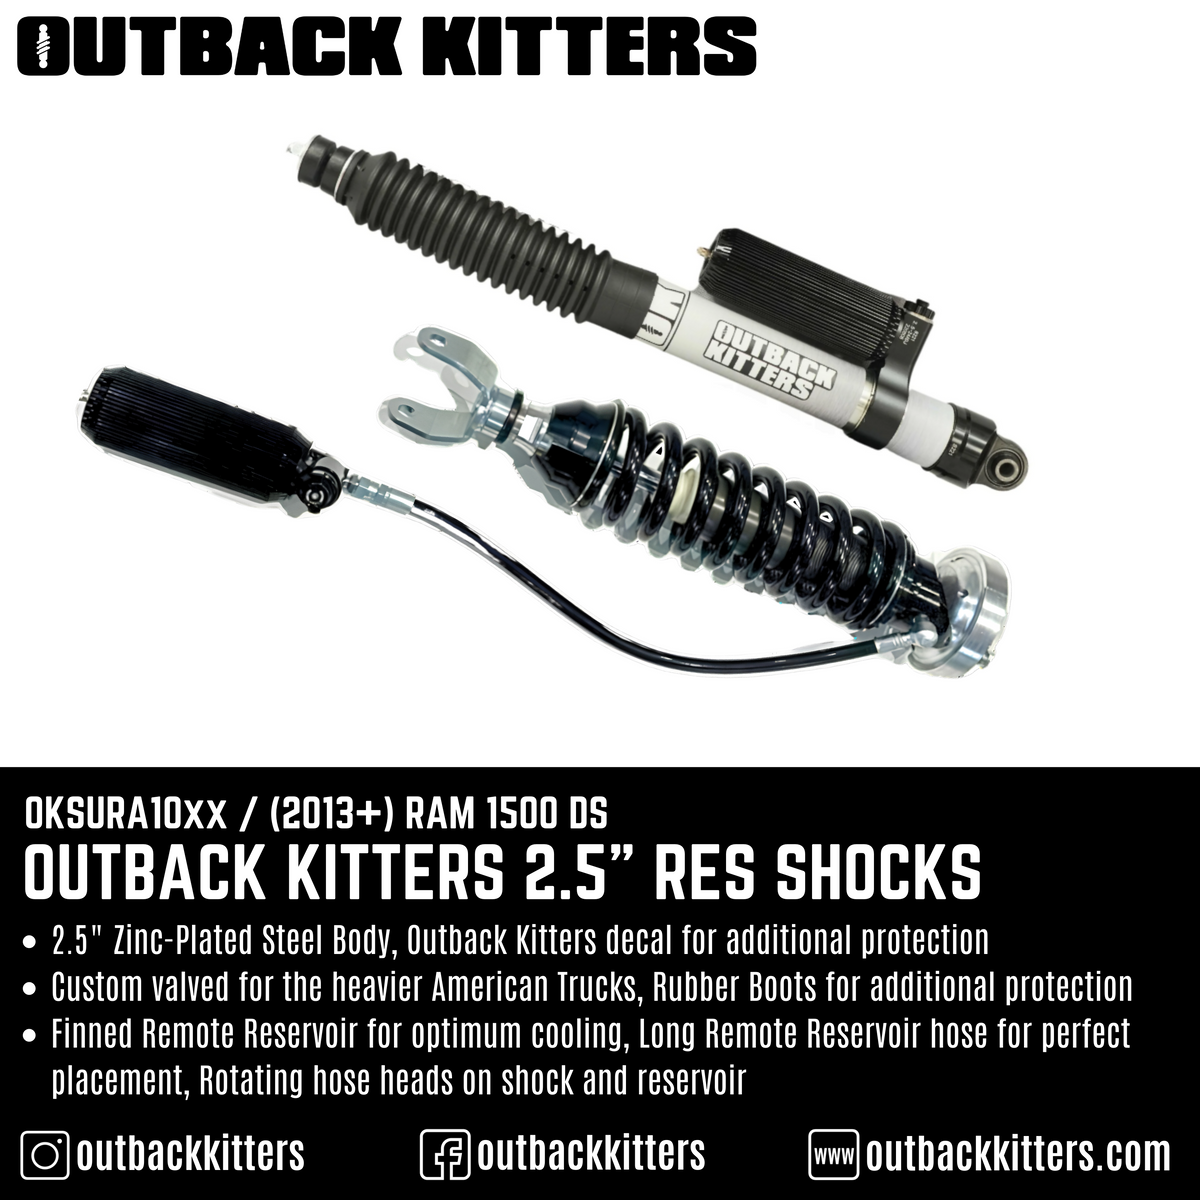 Outback Kitters 2.5" Reservoir Shocks for Ram 1500 DS (2013+) - Outback Kitters